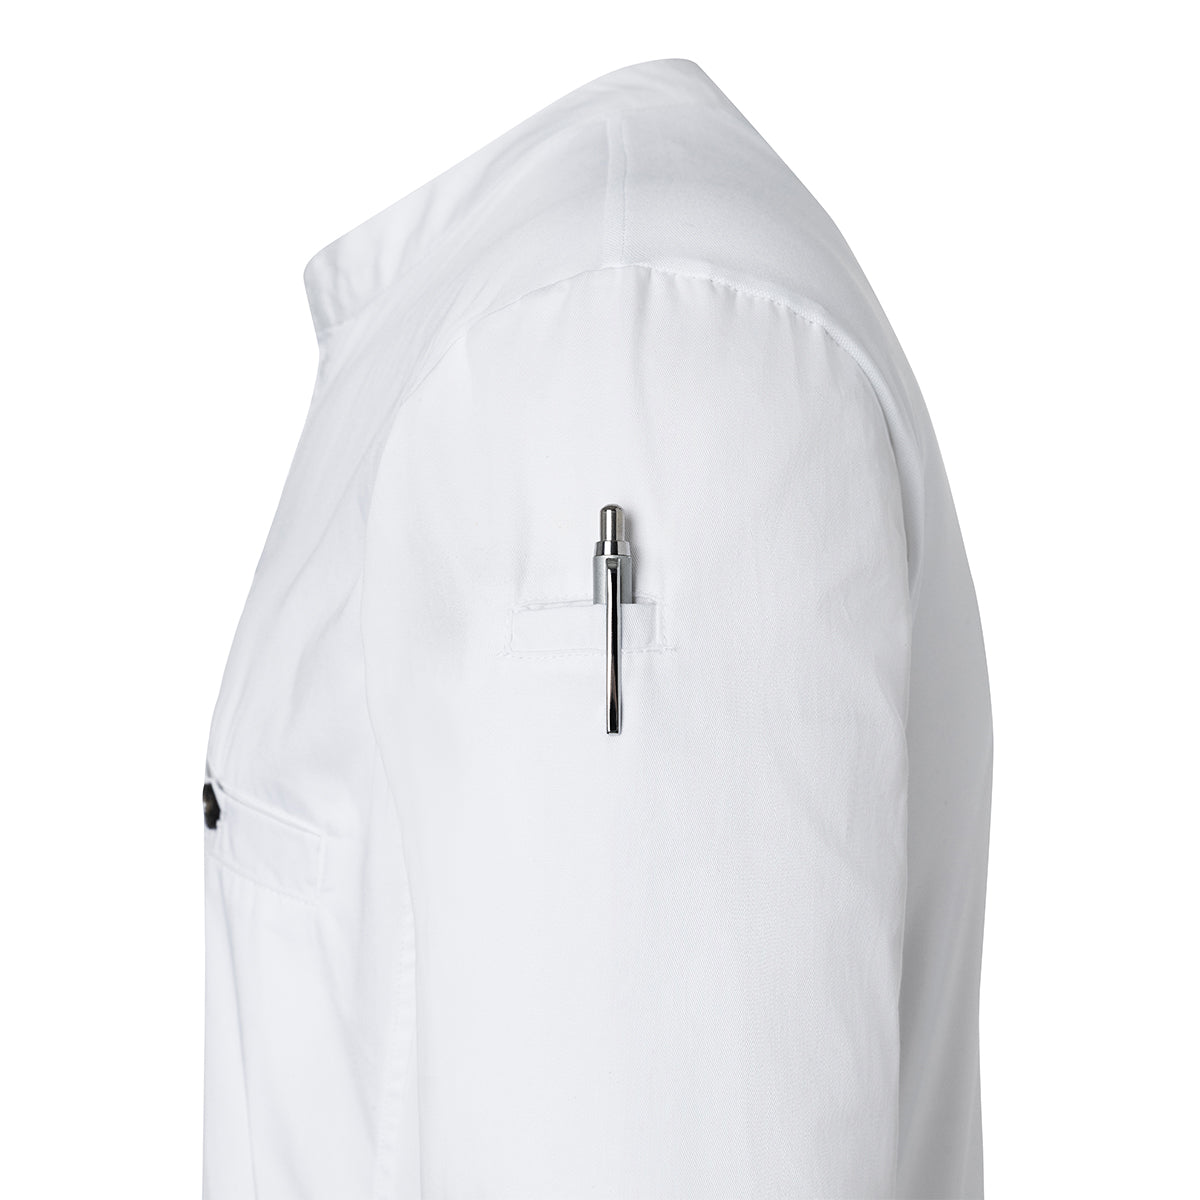 (6 stk) Karlowsky - Langærmet arbejdsskjorte til herrer Performance - Hvid - Størrelse: 2XL